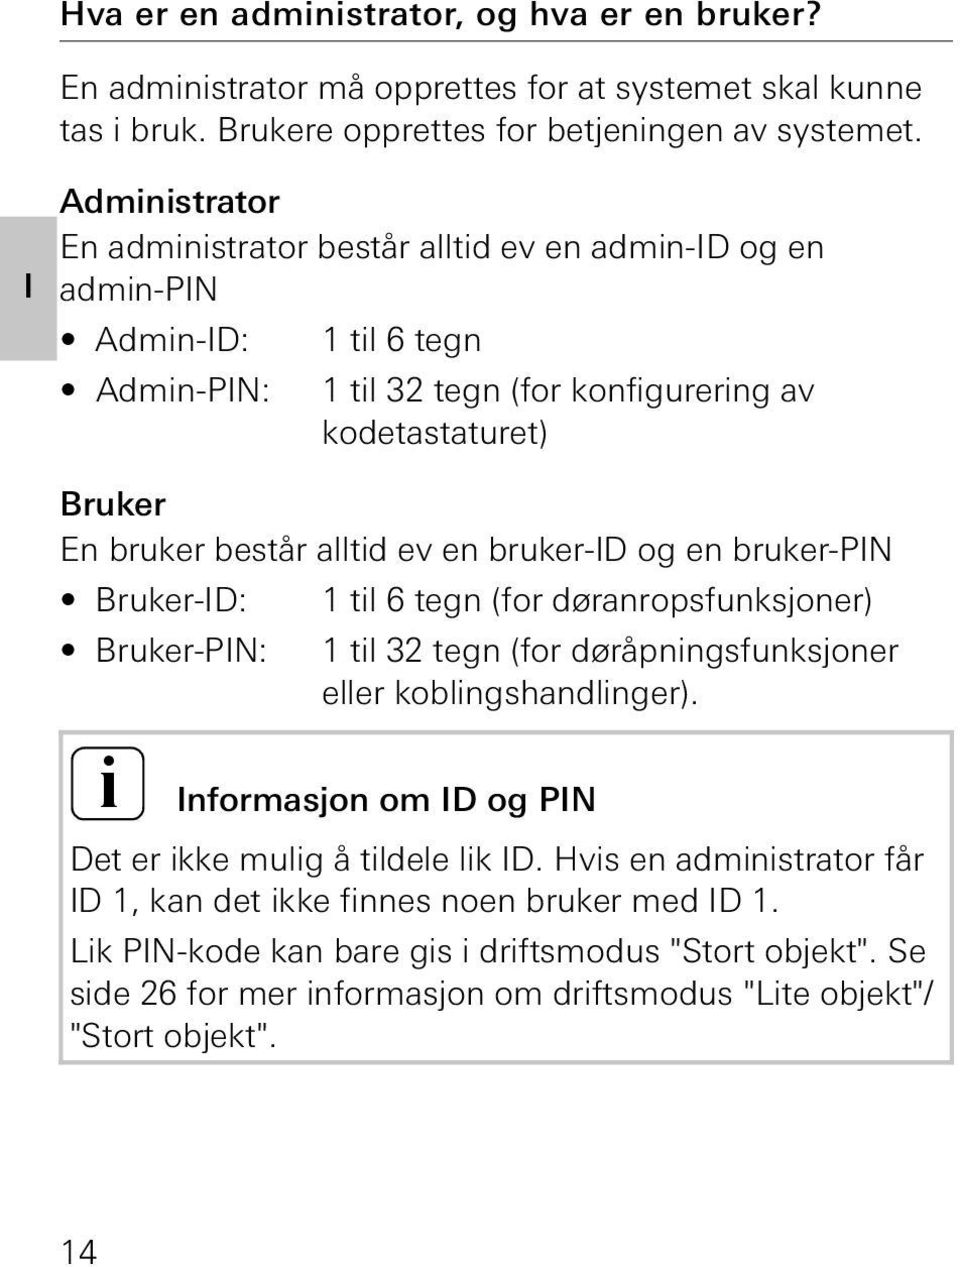 en bruker-id og en bruker-pin Bruker-ID: 1 til 6 tegn (for døranropsfunksjoner) Bruker-PIN: 1 til 3 tegn (for døråpningsfunksjoner eller koblingshandlinger).